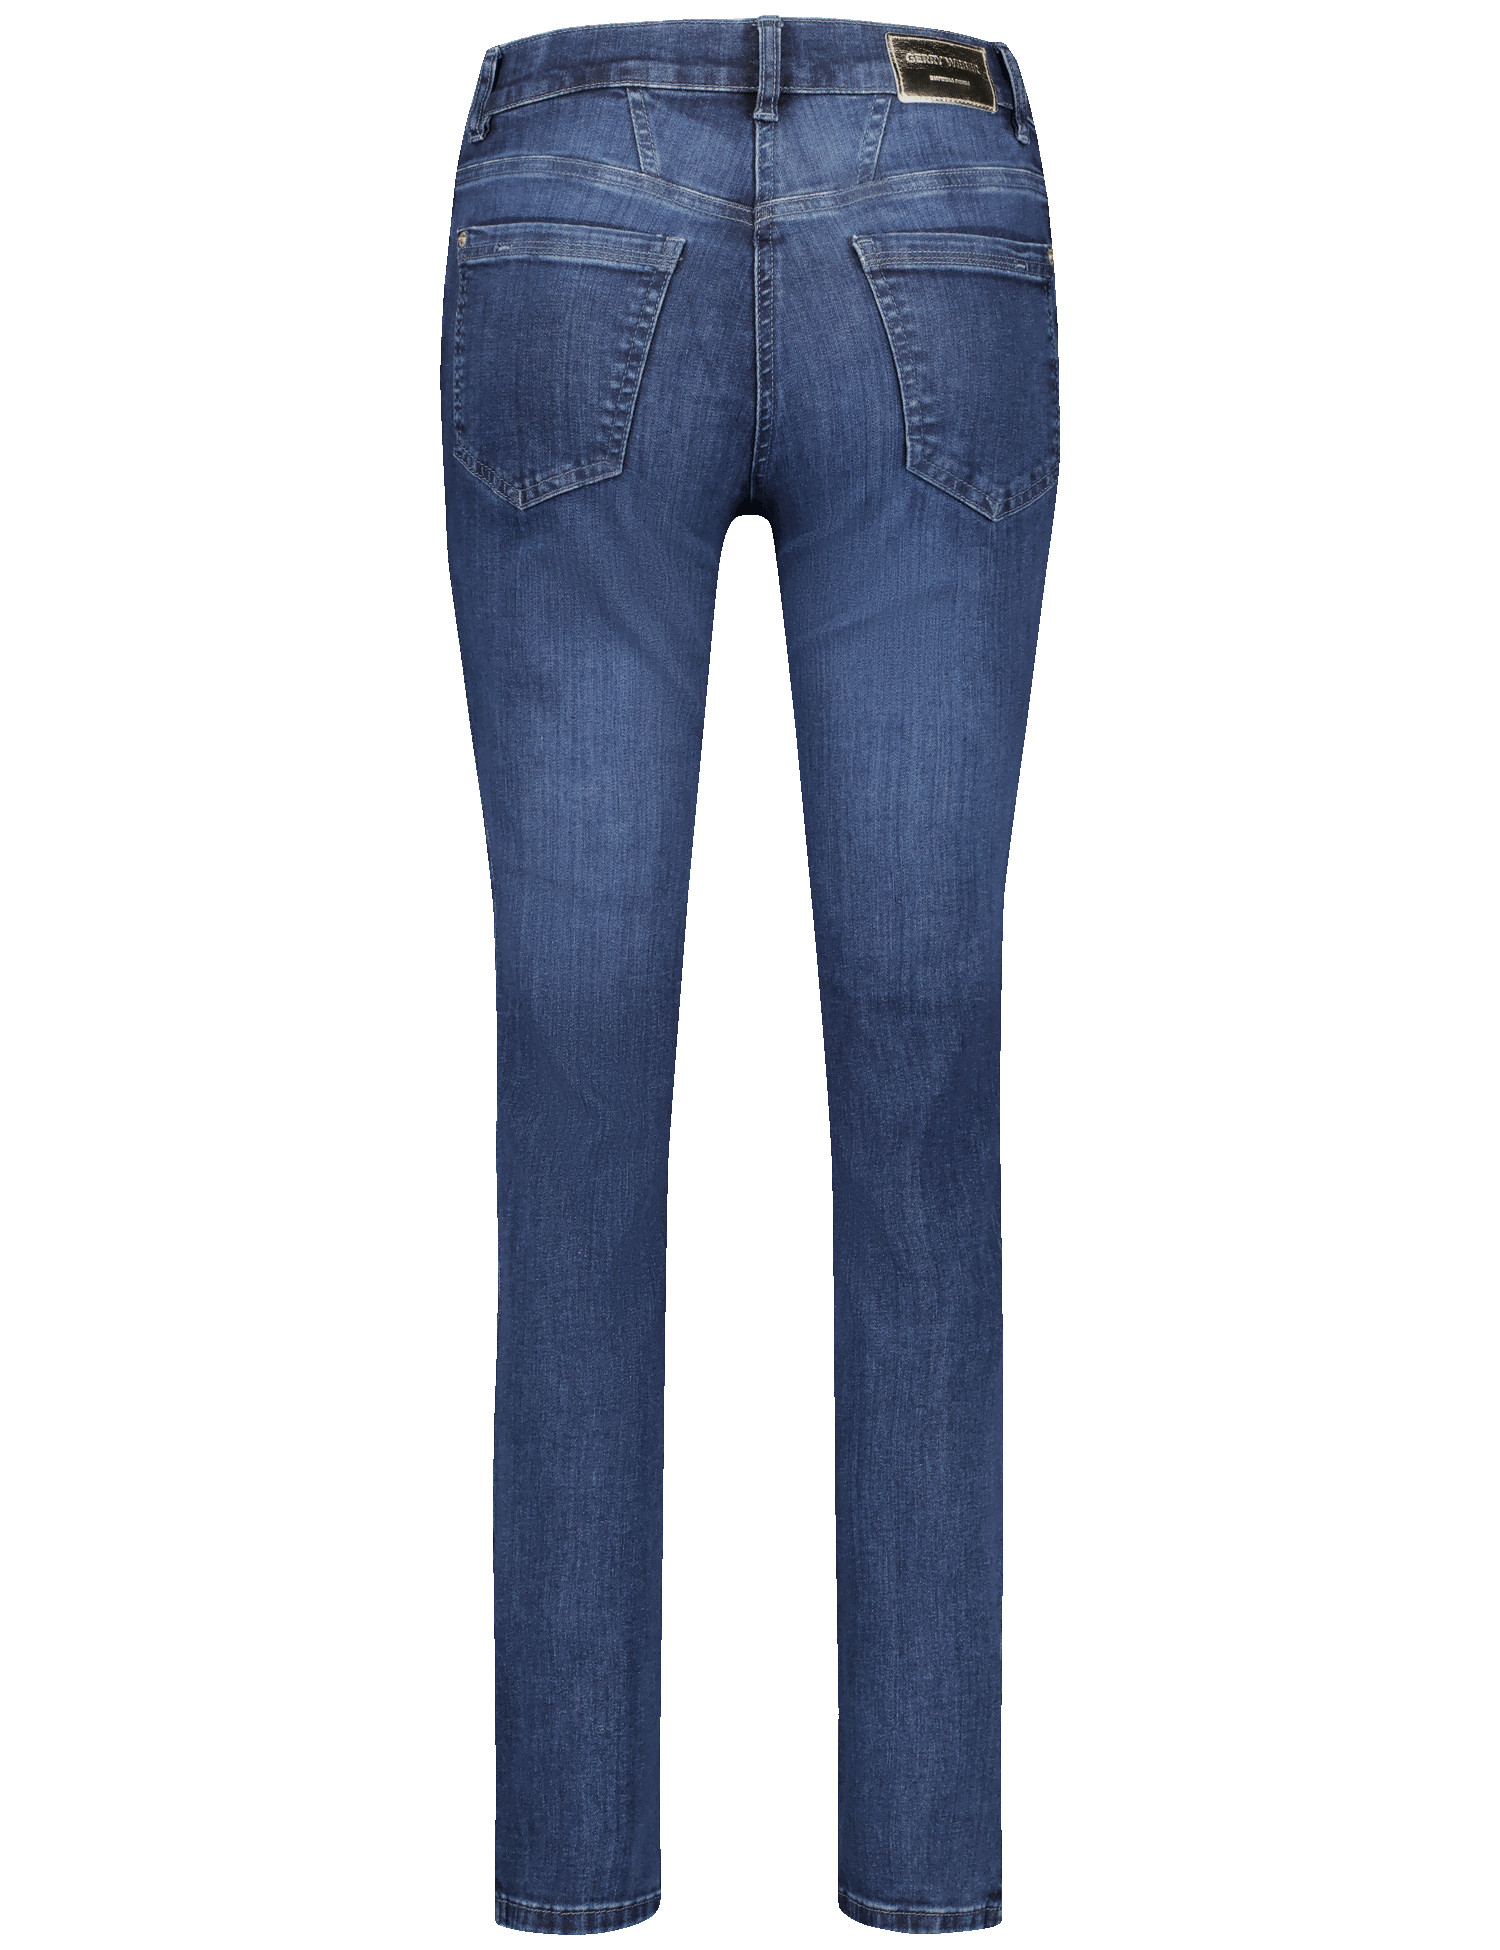 Damen-Jeans im Skinny-Look in blue used Denim aus Baumwoll-Elasthan